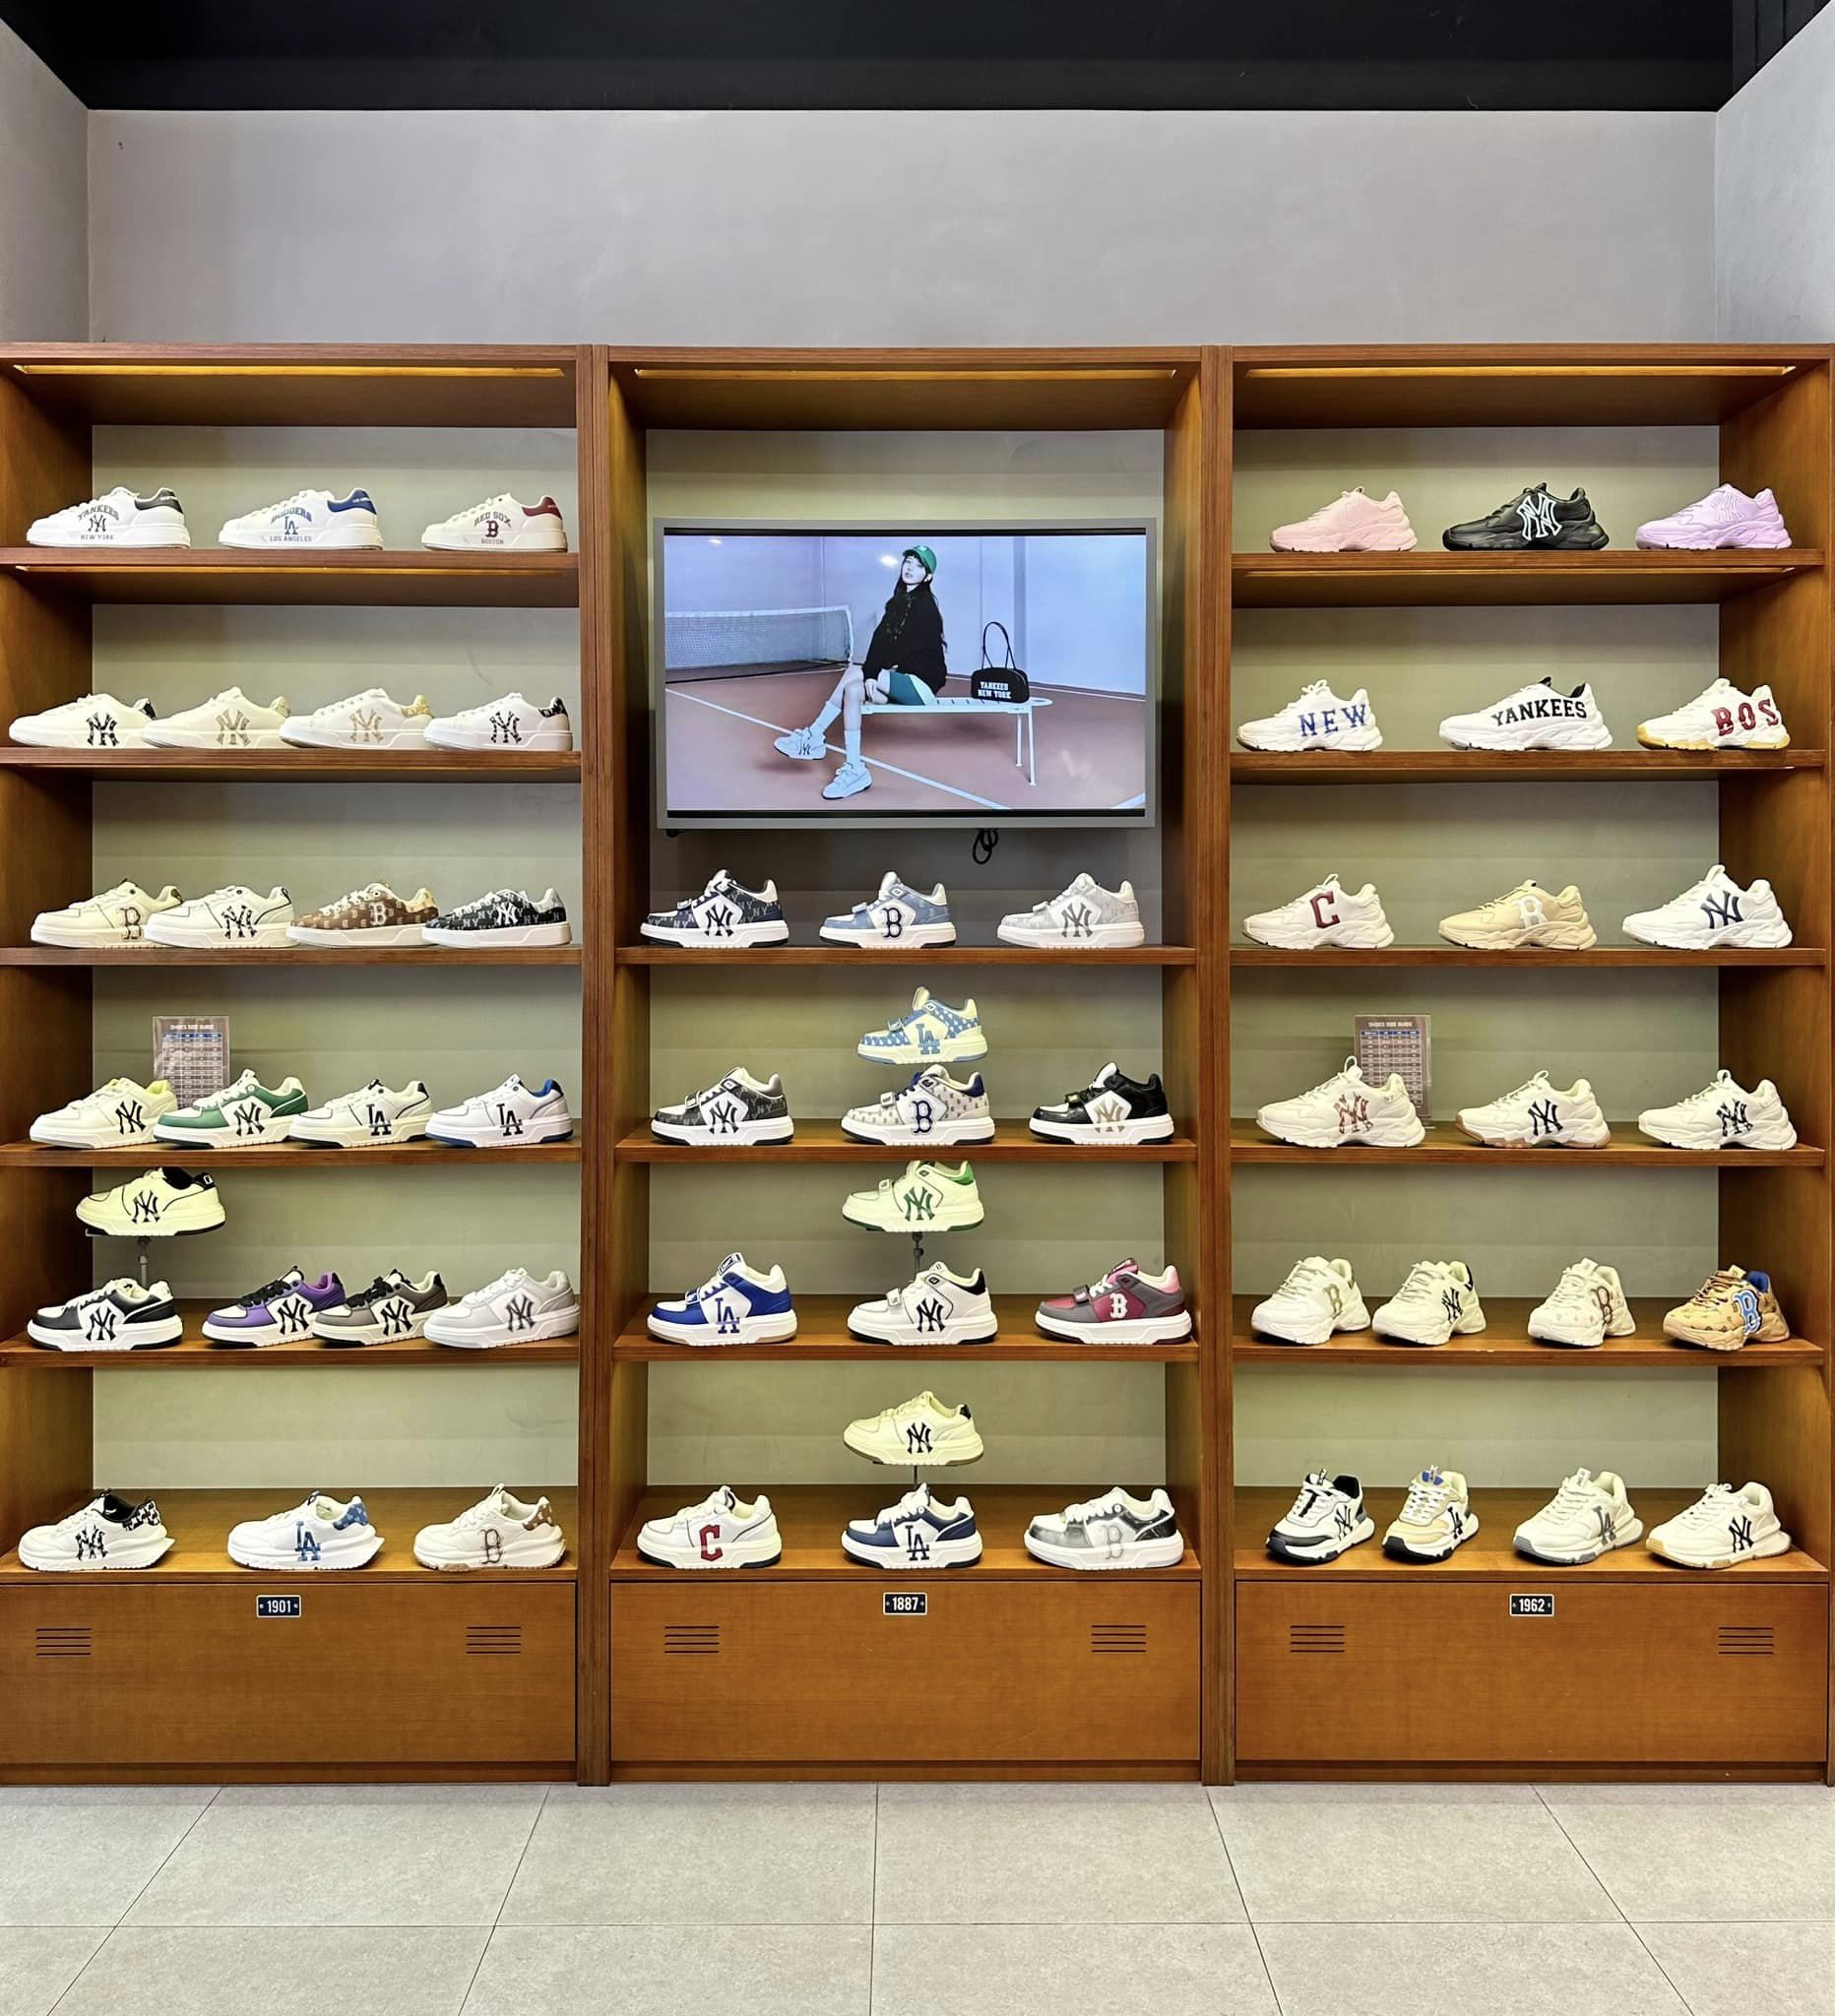 shop giày Đà Nẵng